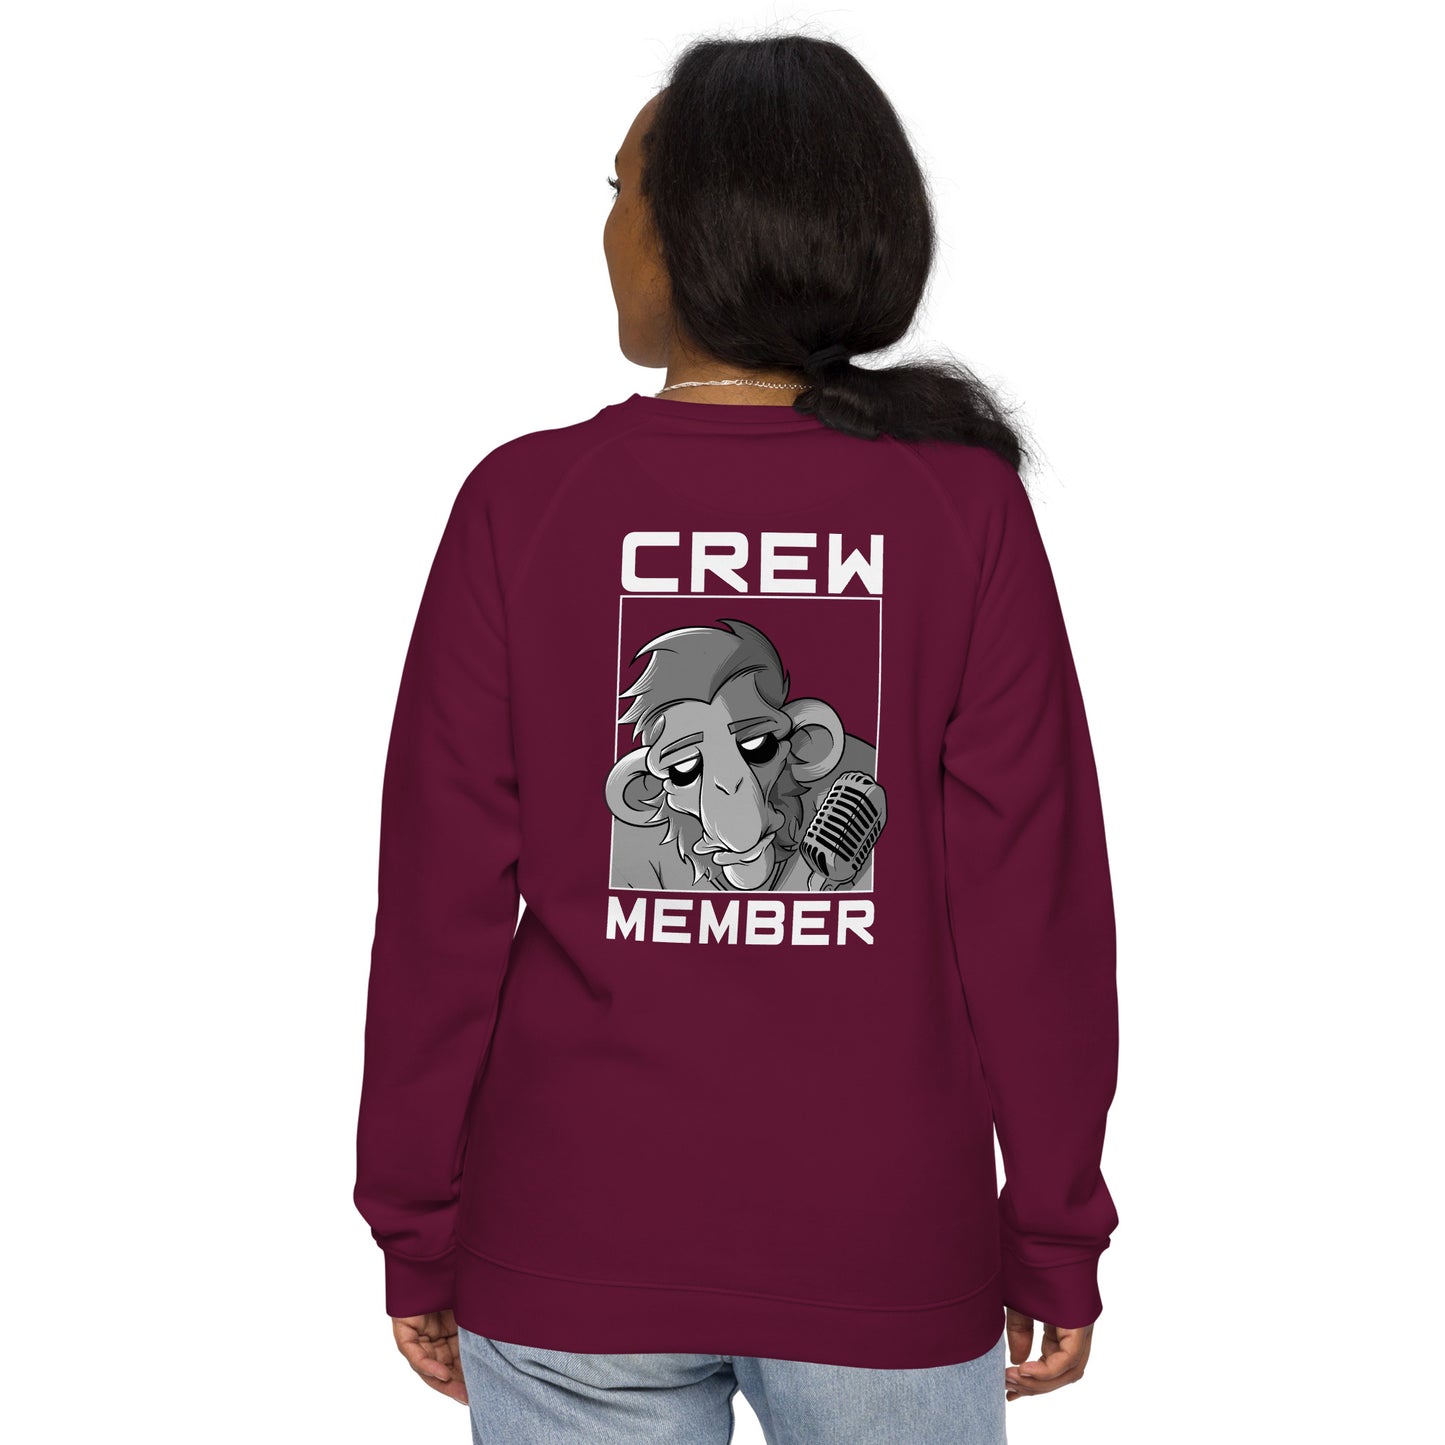 The Gig Crew Unisex Raglan Sweatshirt